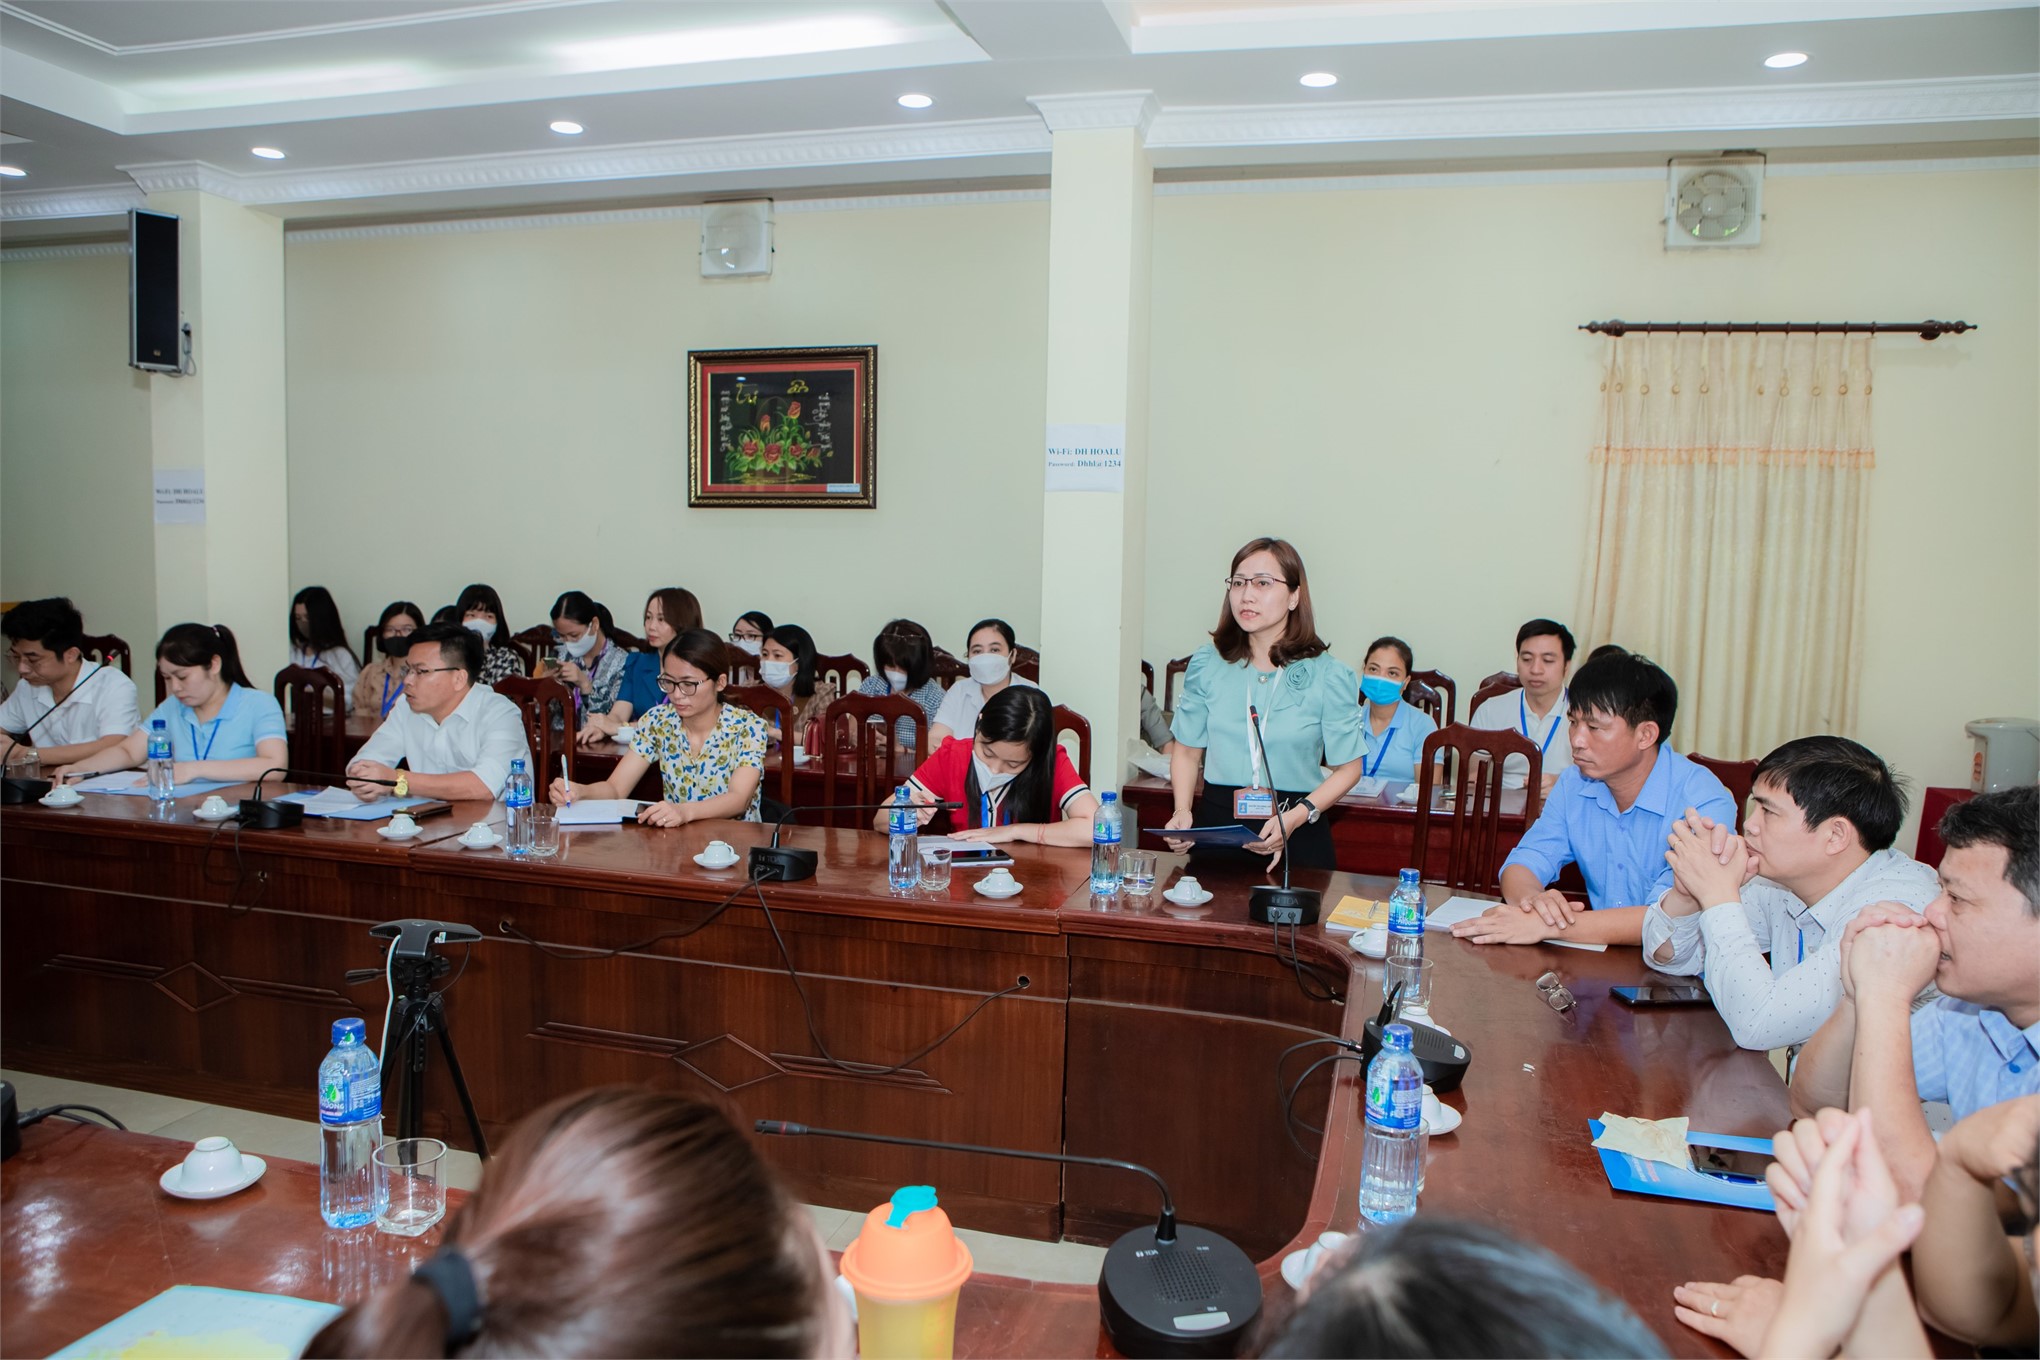 Lễ khai giảng lớp bồi dưỡng Tiếng Anh bậc 3 cho cán bộ, công chức tỉnh Ninh Bình năm 2022